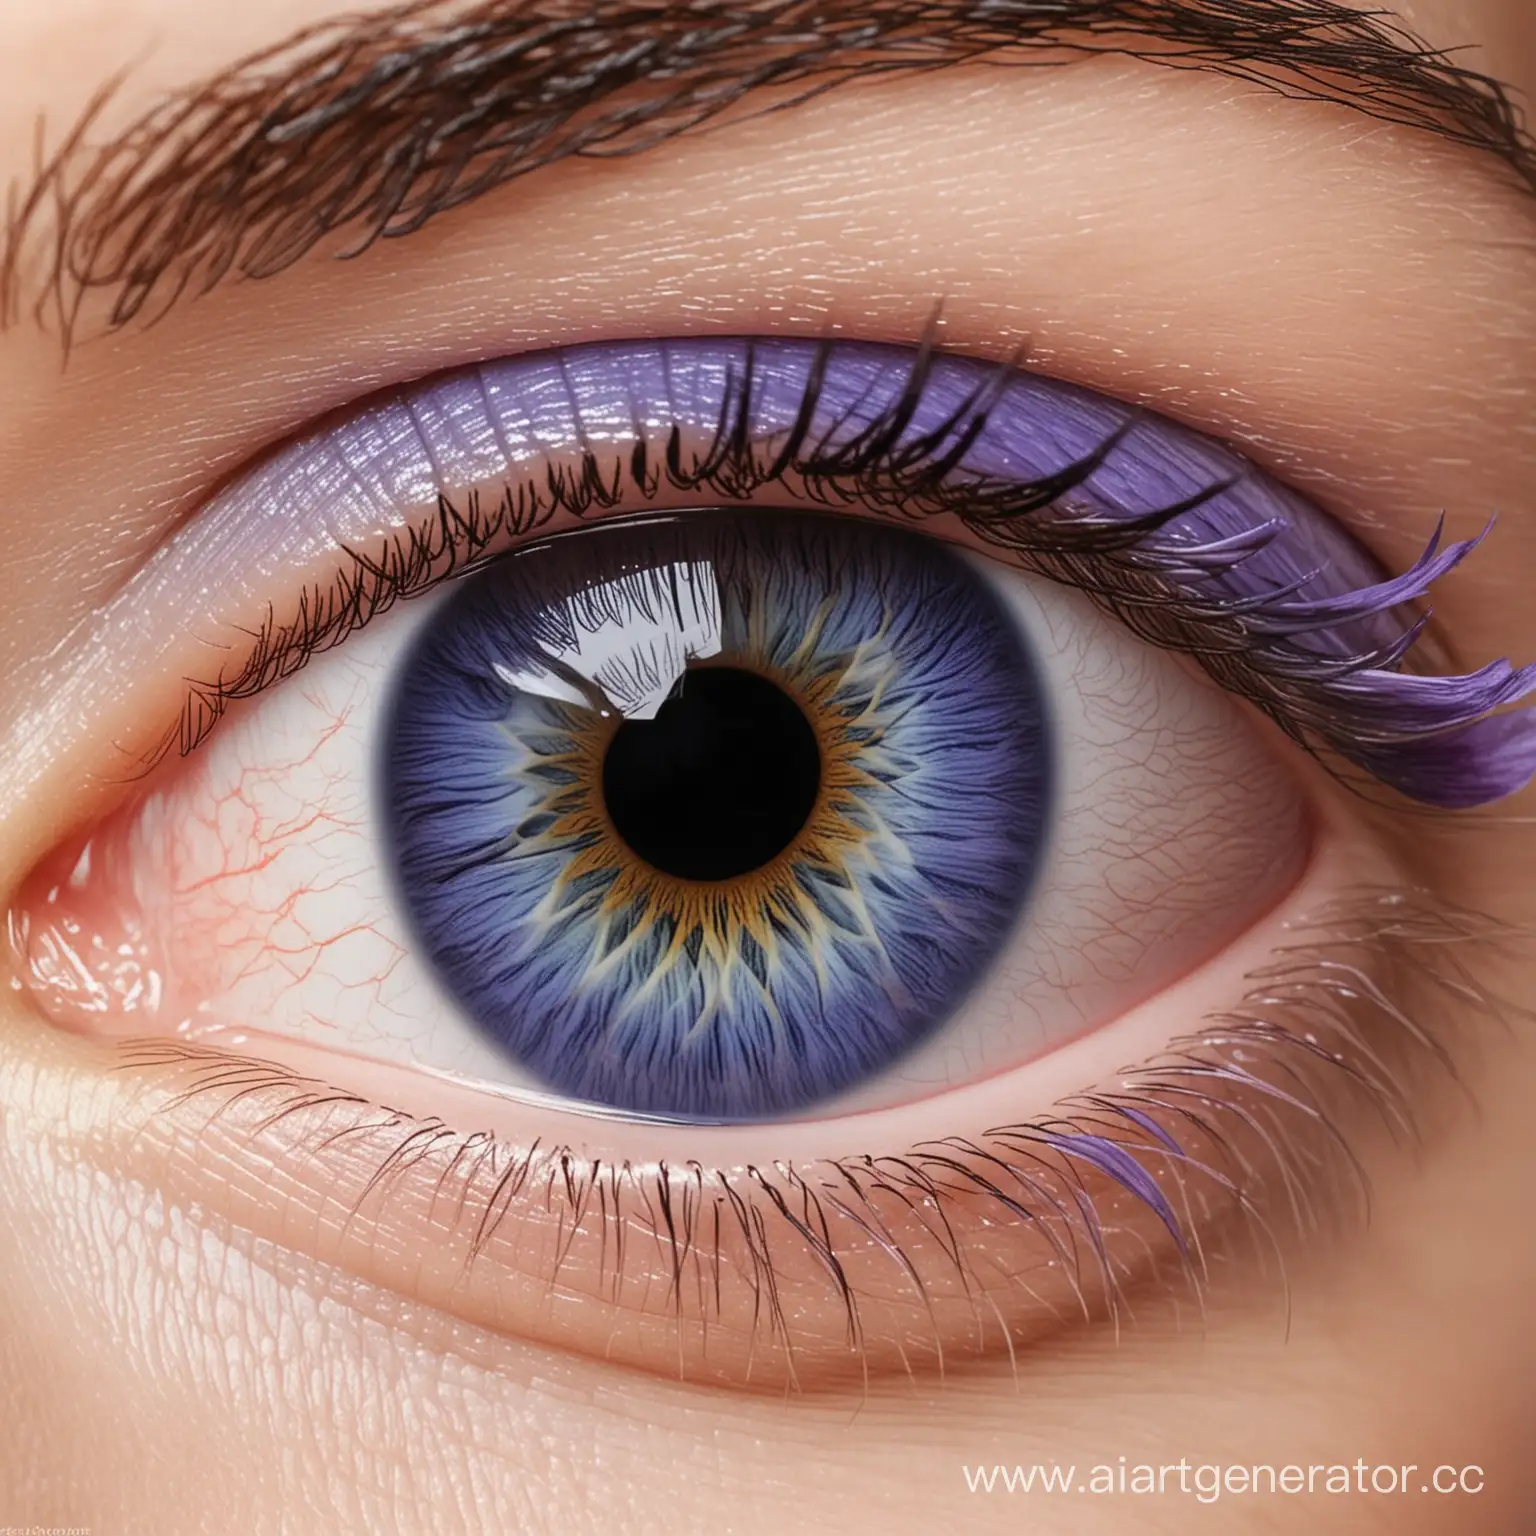 сгенерируй глаз с красивой радужкой от голубого к фиолетовому в пастельных цветах более минималистично